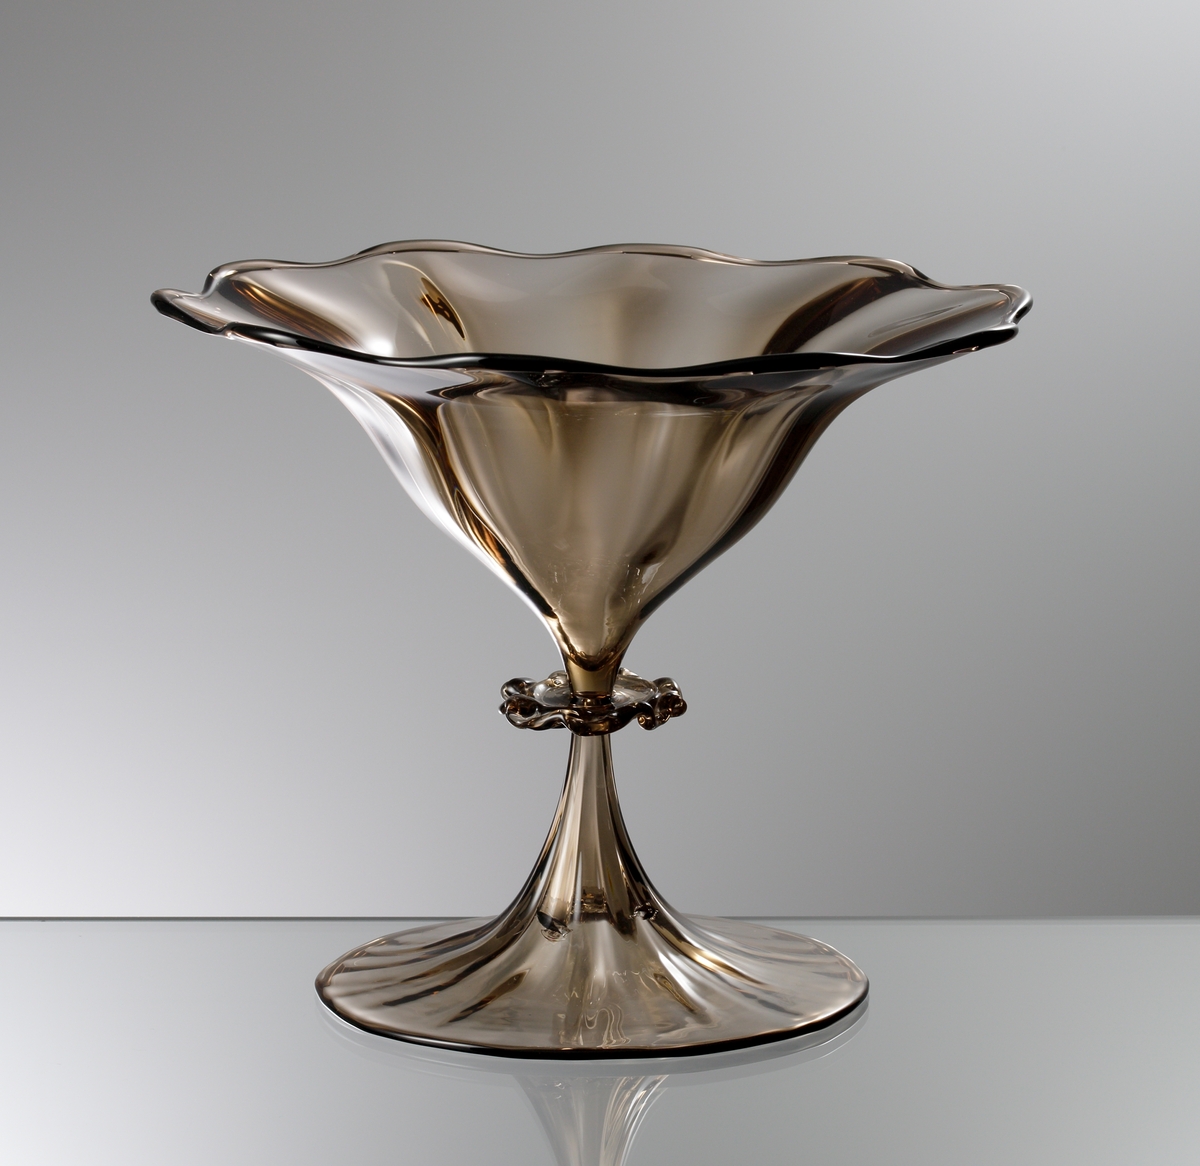 "Slottsglas" formgivet av Simon Gate till Göteborgsutställningen 1923. Friblåst och räfflat i ljusbrunt glas. Fot och kupa blåsta och drivna. Räfflat ben med en väl tilltagen knapp.